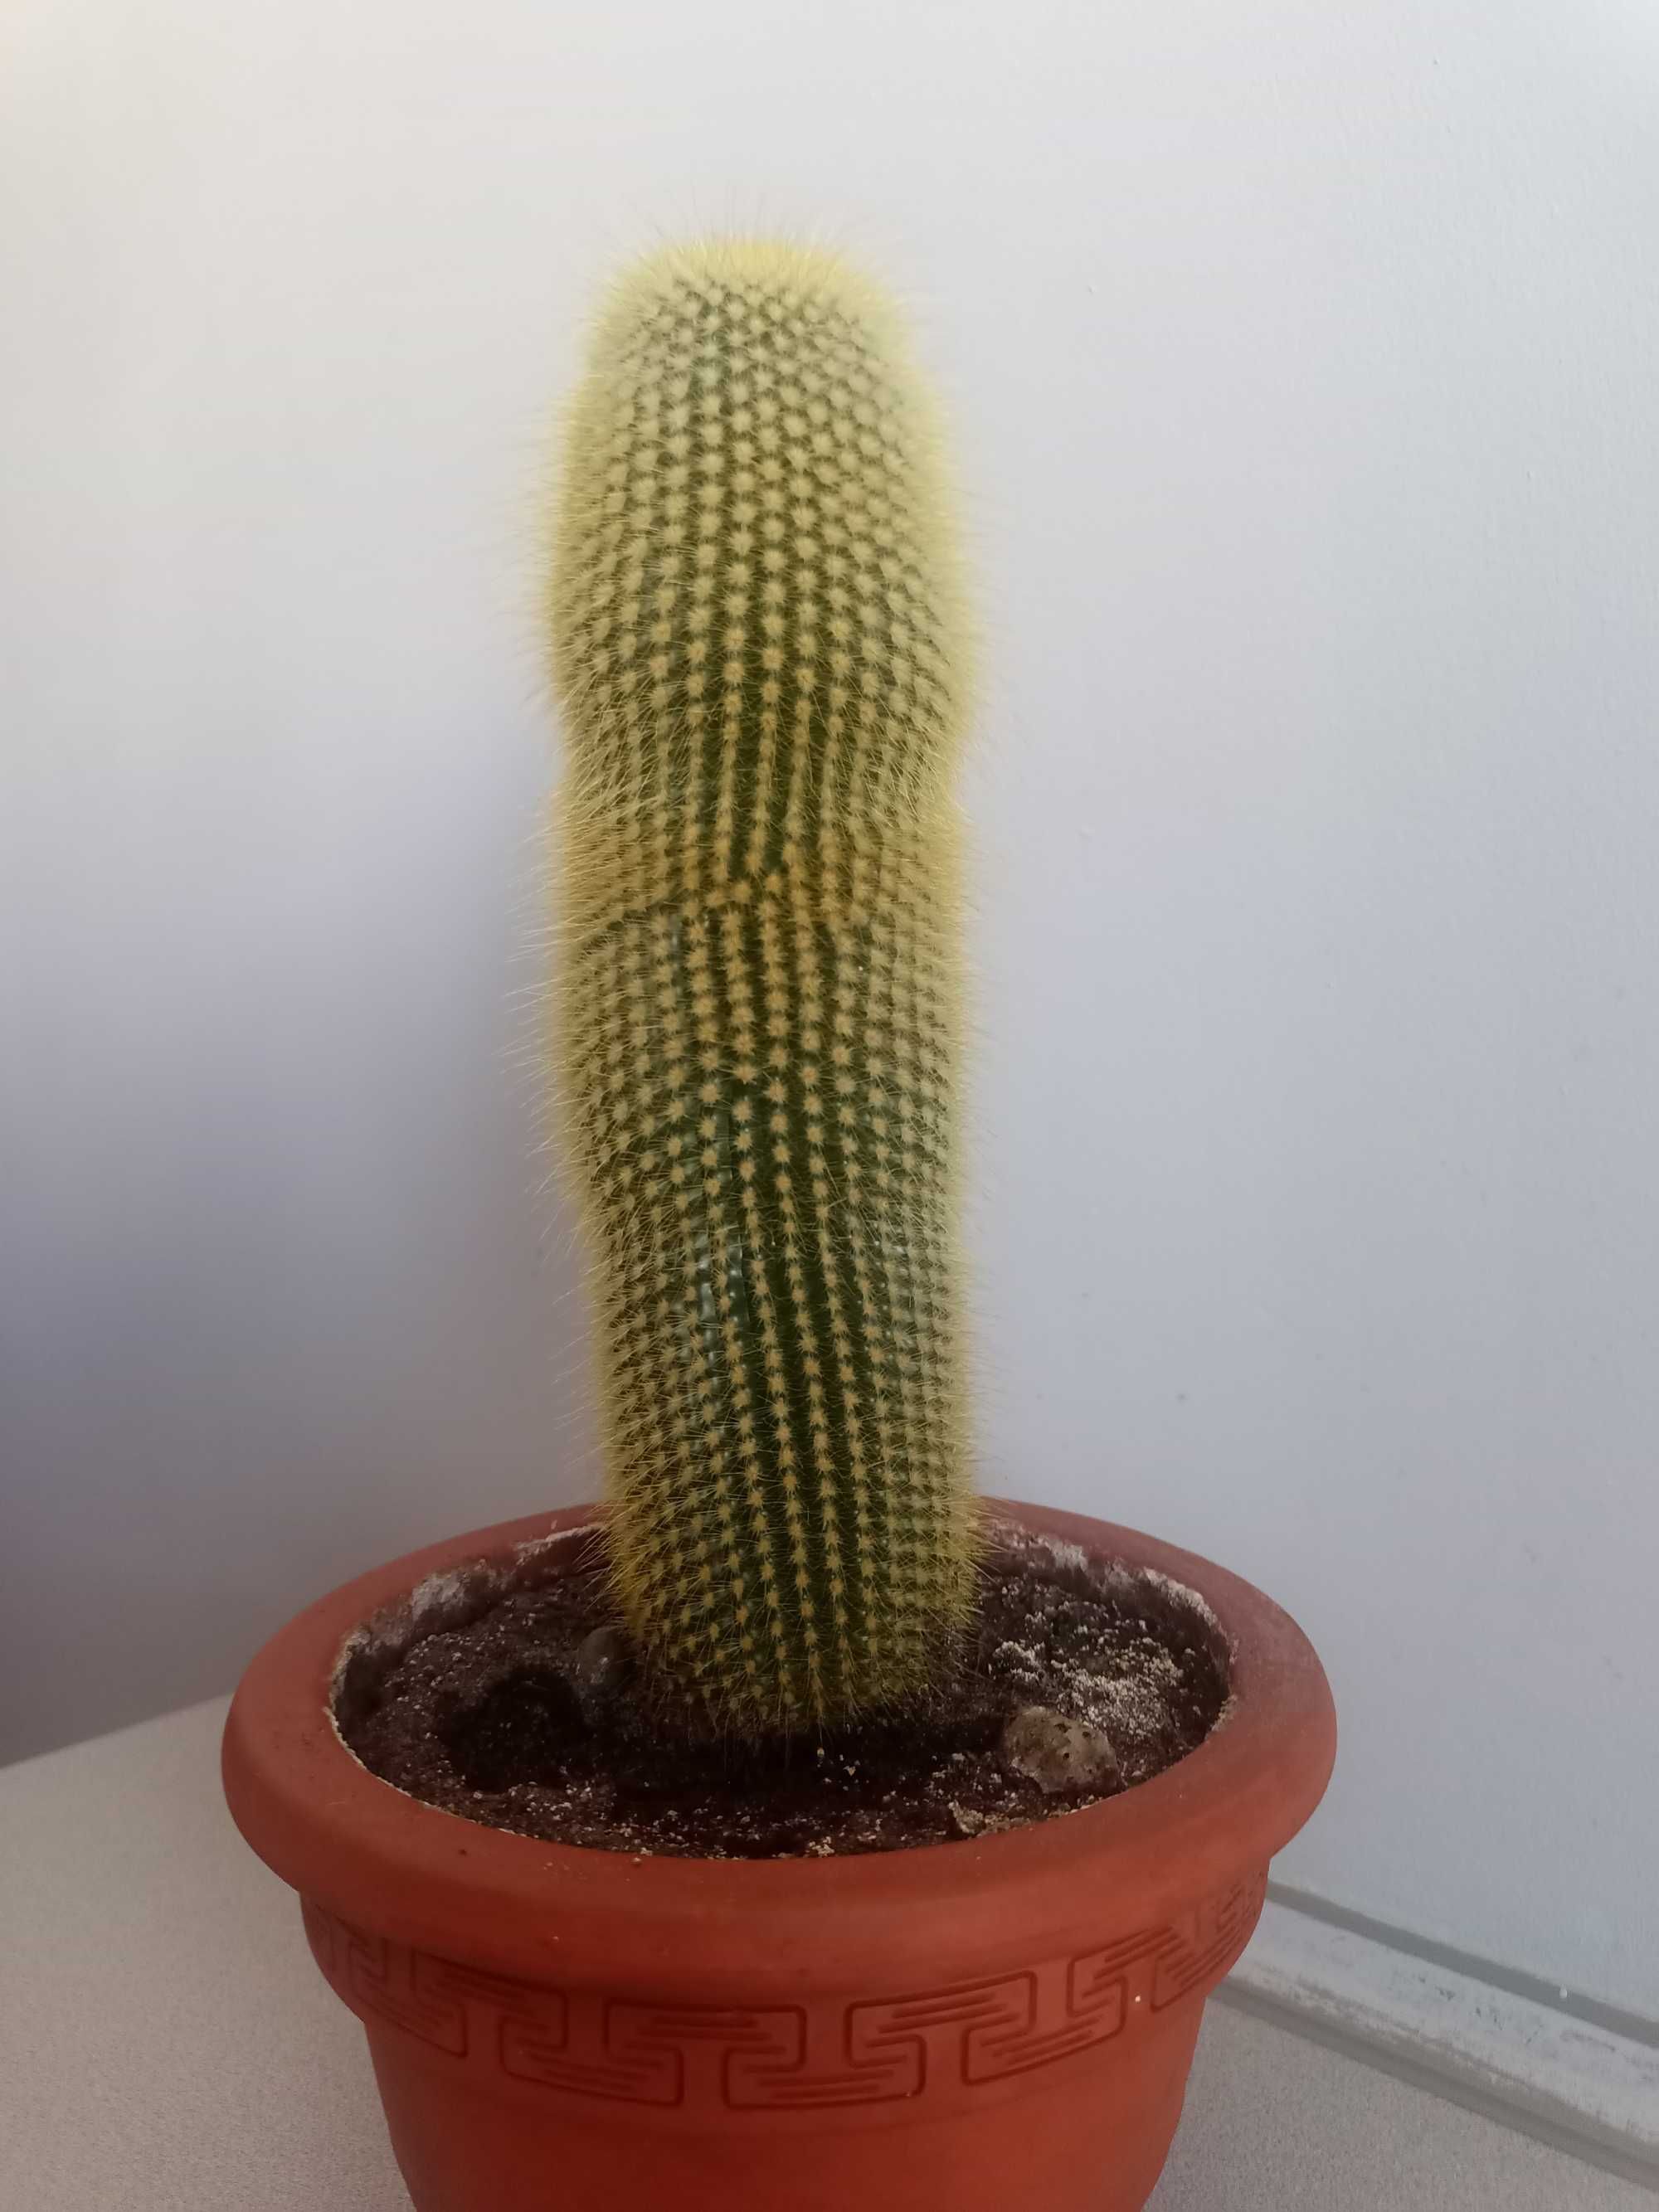 Kaktus Haageocereus chosicensis